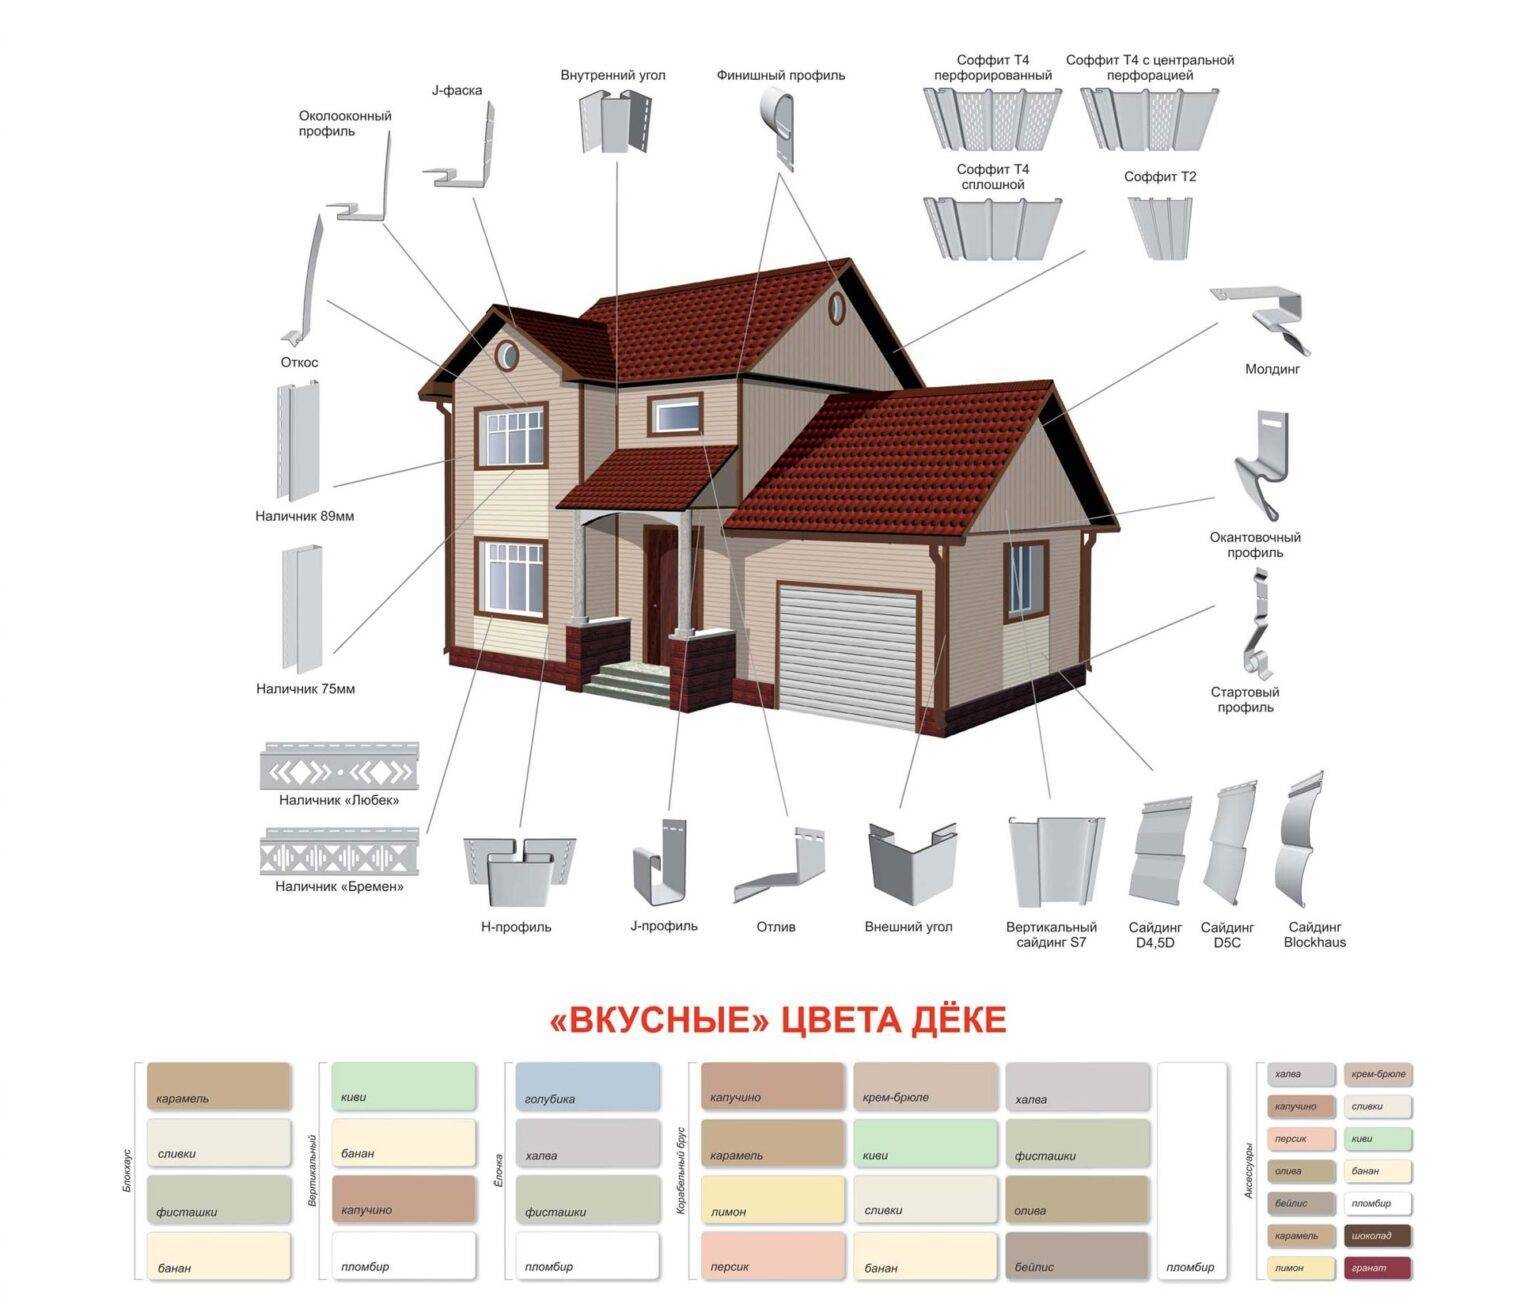 Дома обшитые сайдингом: фото отделки фасадов домов сайдингом различных вариантов